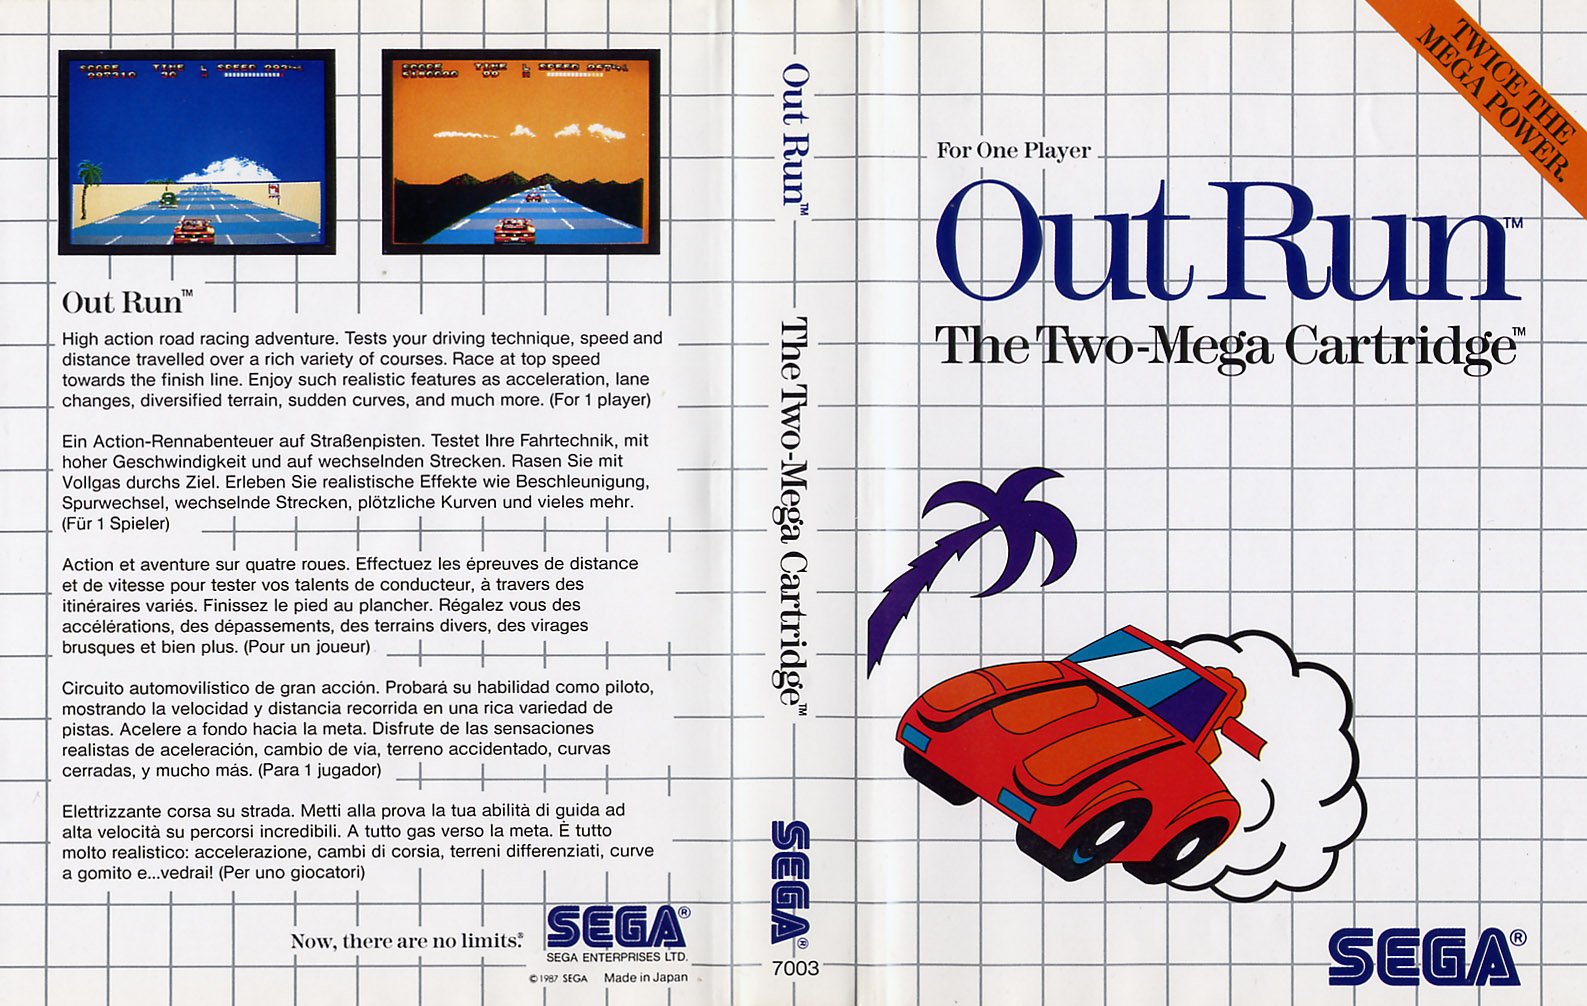 Caratula de Out Run para Sega Master System